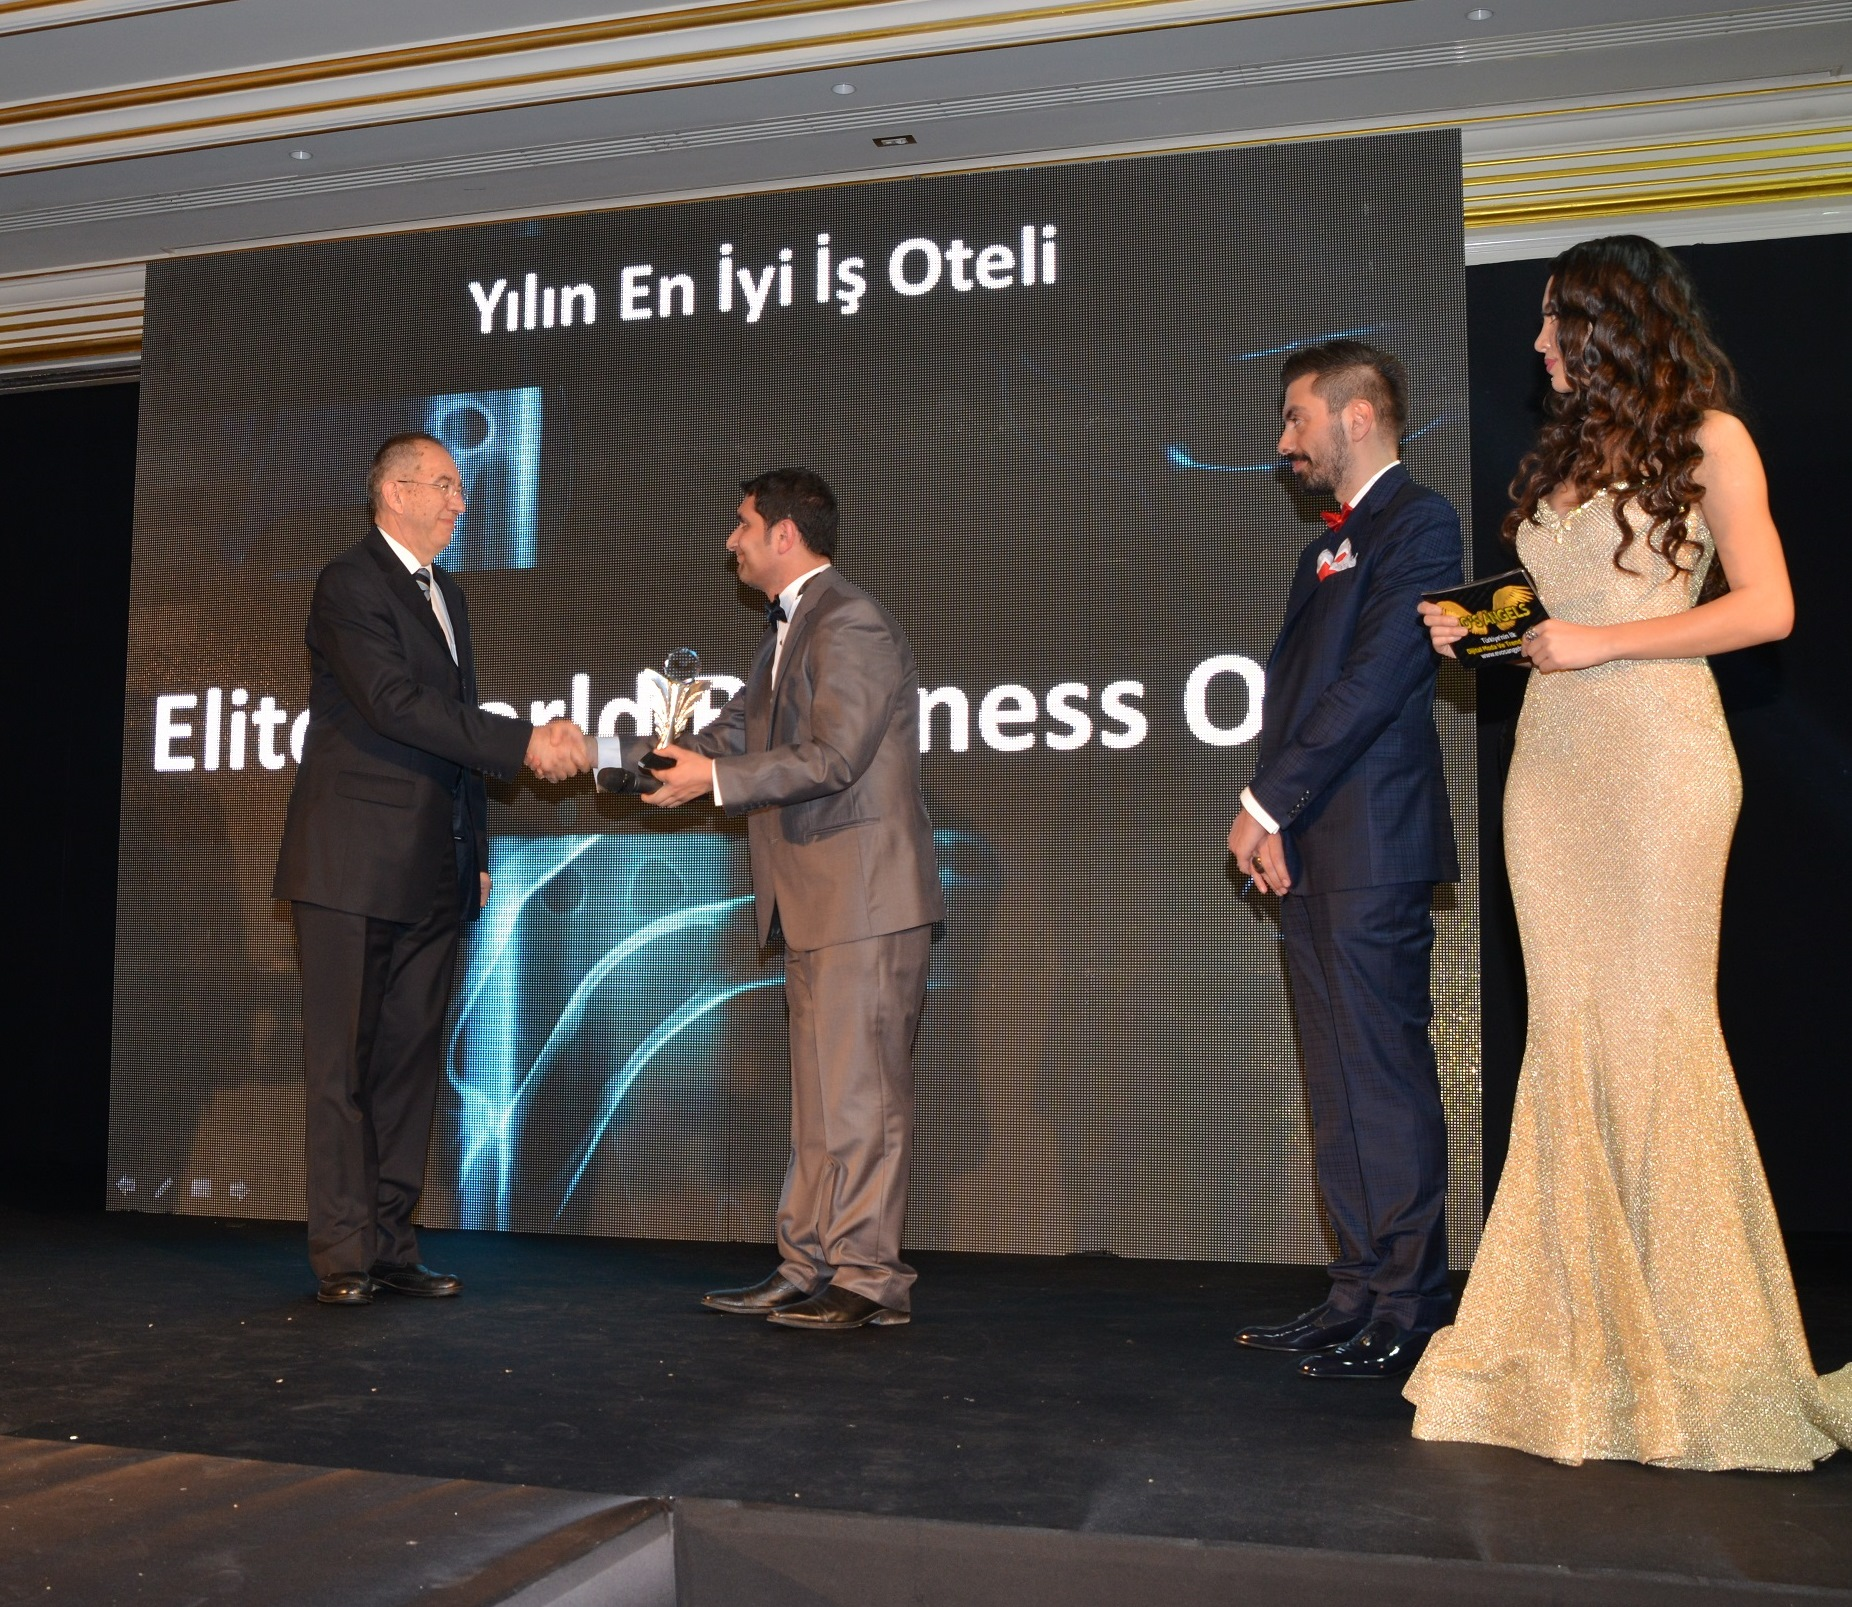 Yılın En İyi İş Oteli Ödülü  Elite World Business Otel’in oldu